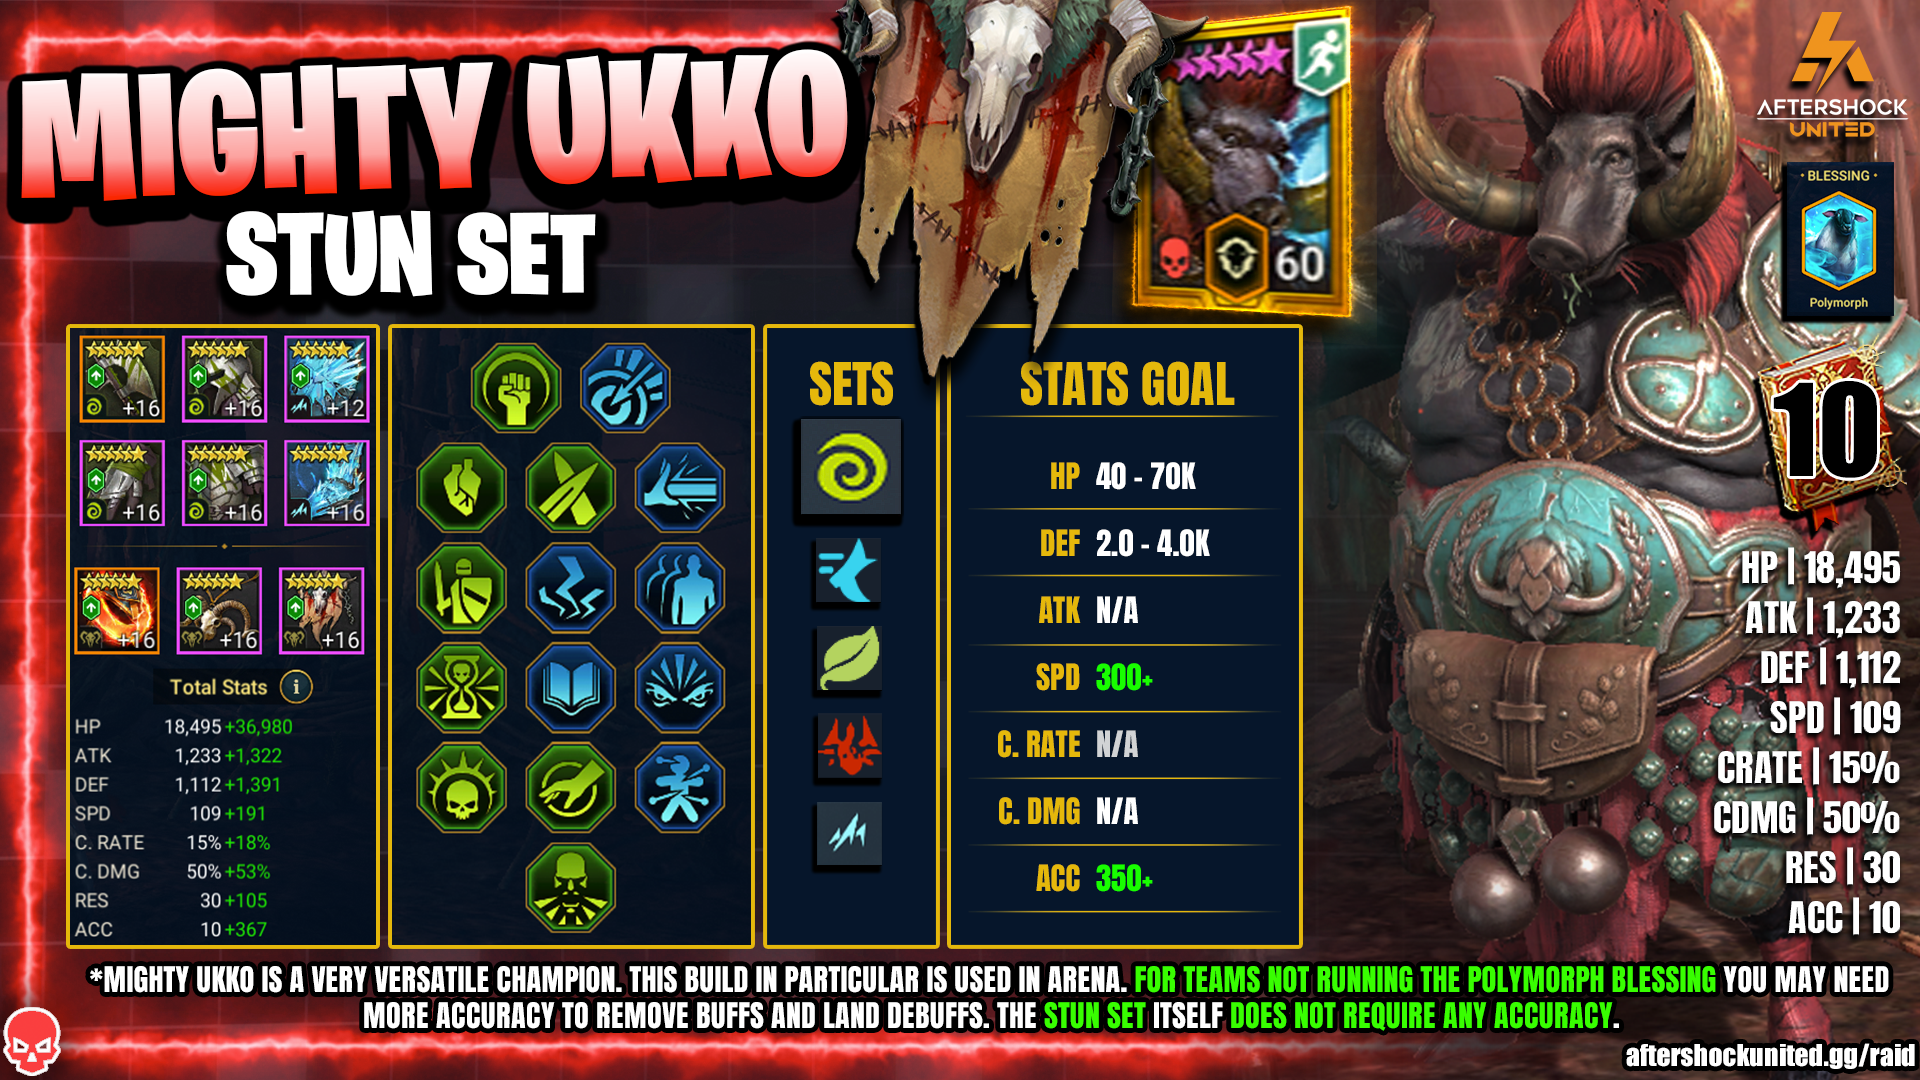 Mighty Ukko Stun Set